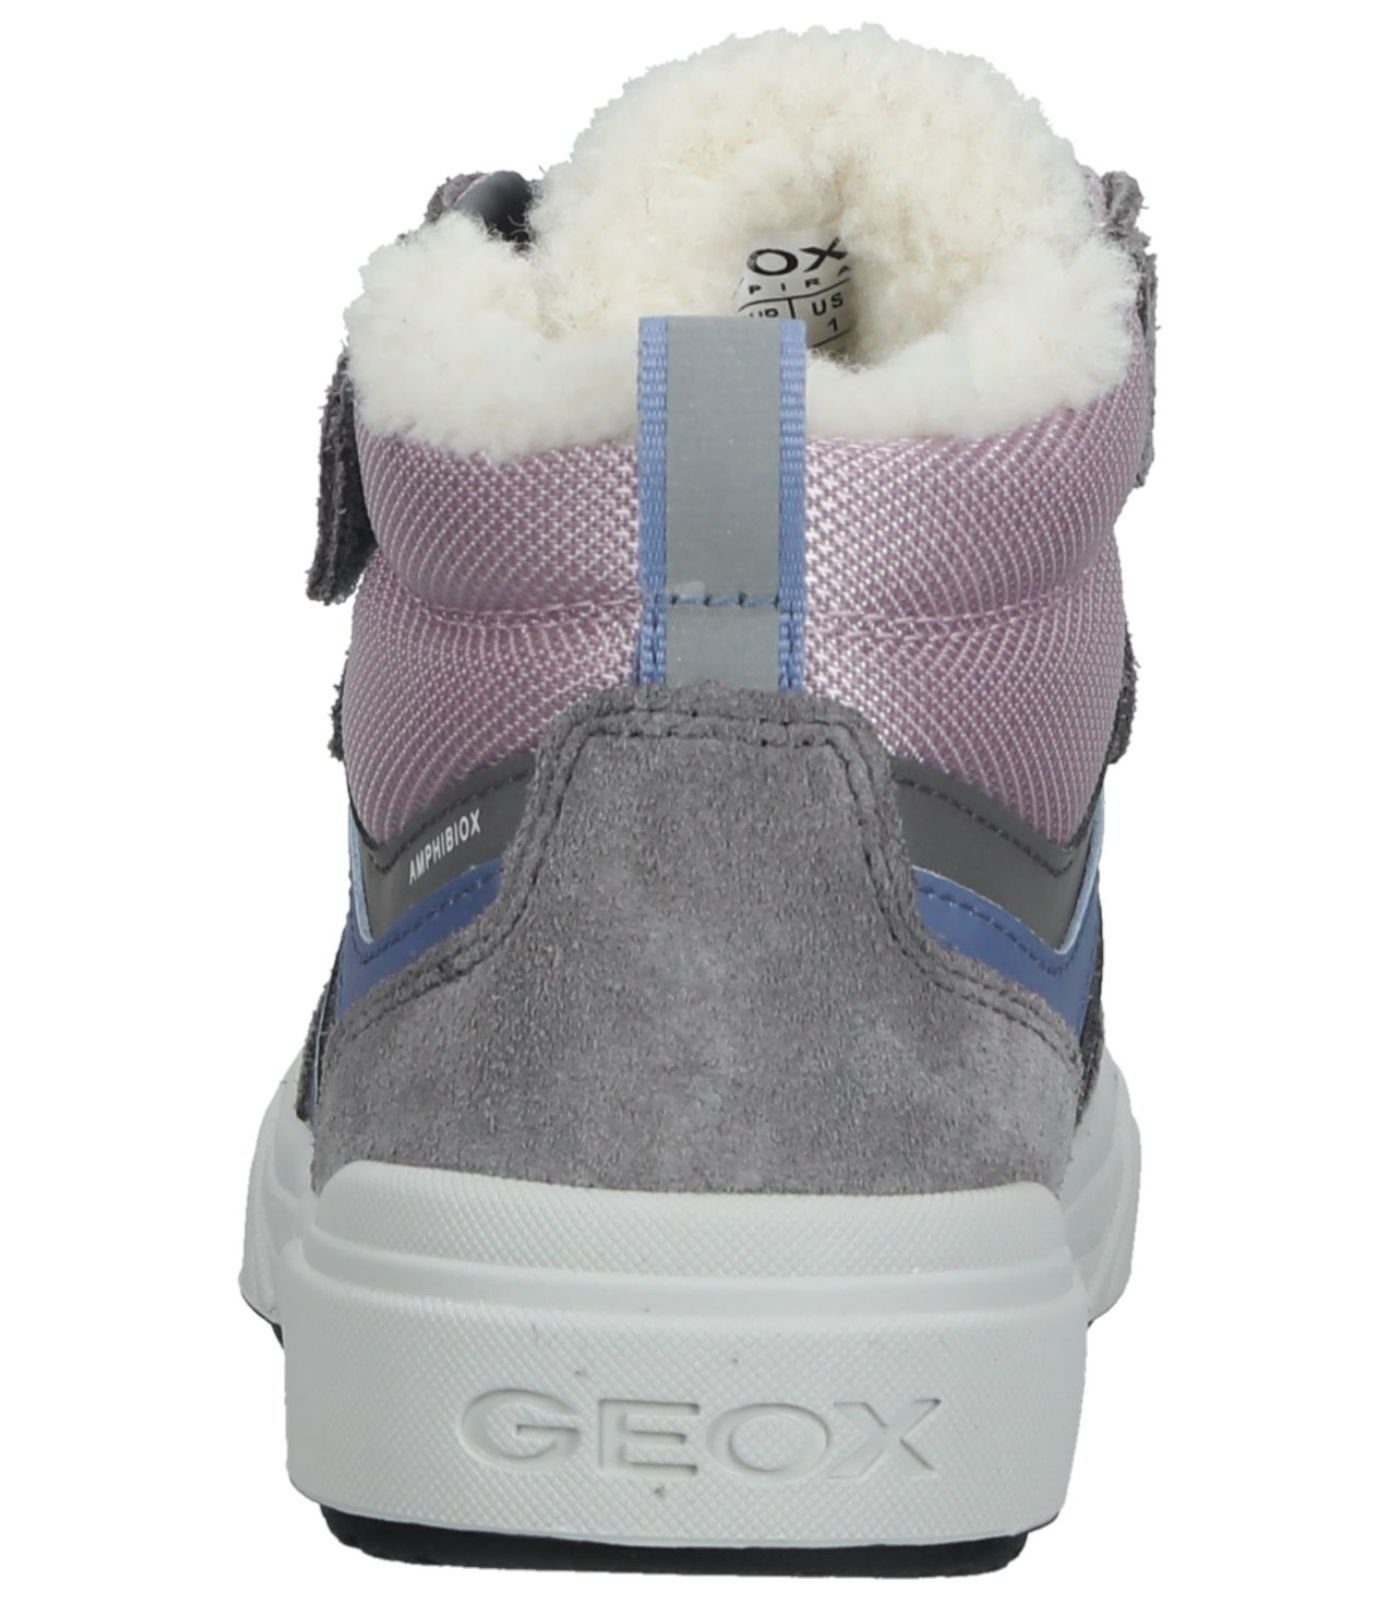 Leder/Textil Geox Grau Sneaker Sneaker Pink